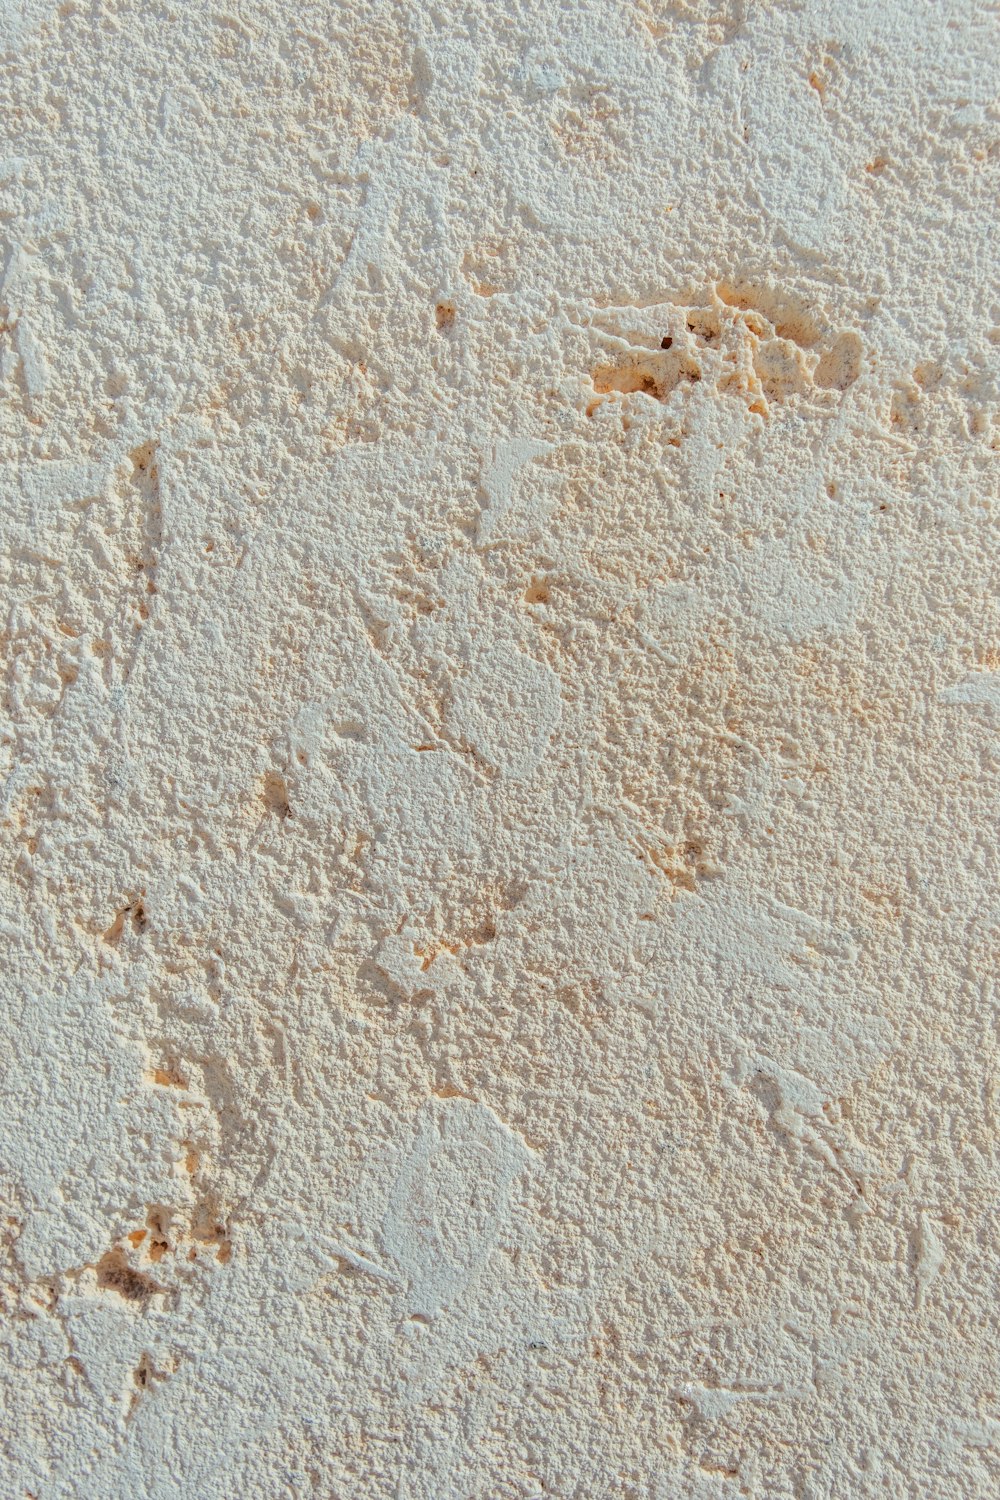 Un primo piano di una parete con vernice bianca